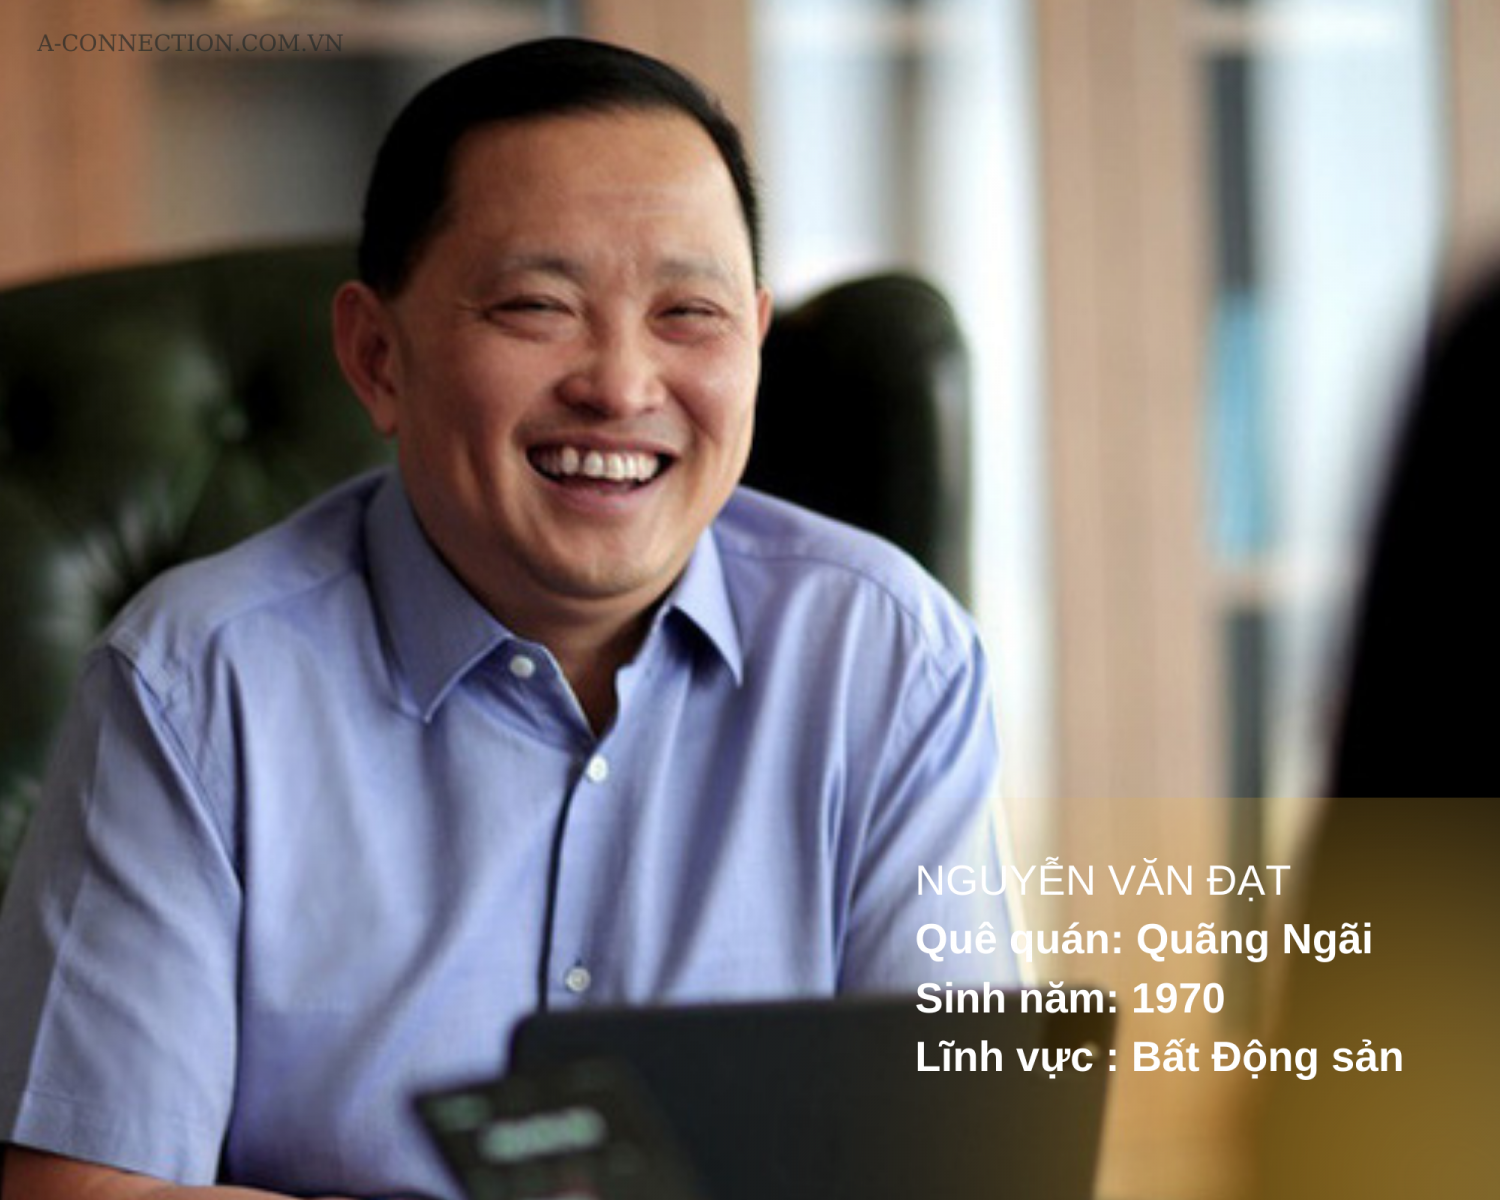 Những người giàu nhất thị trường chứng khoán Việt Nam a-connection.com.vn